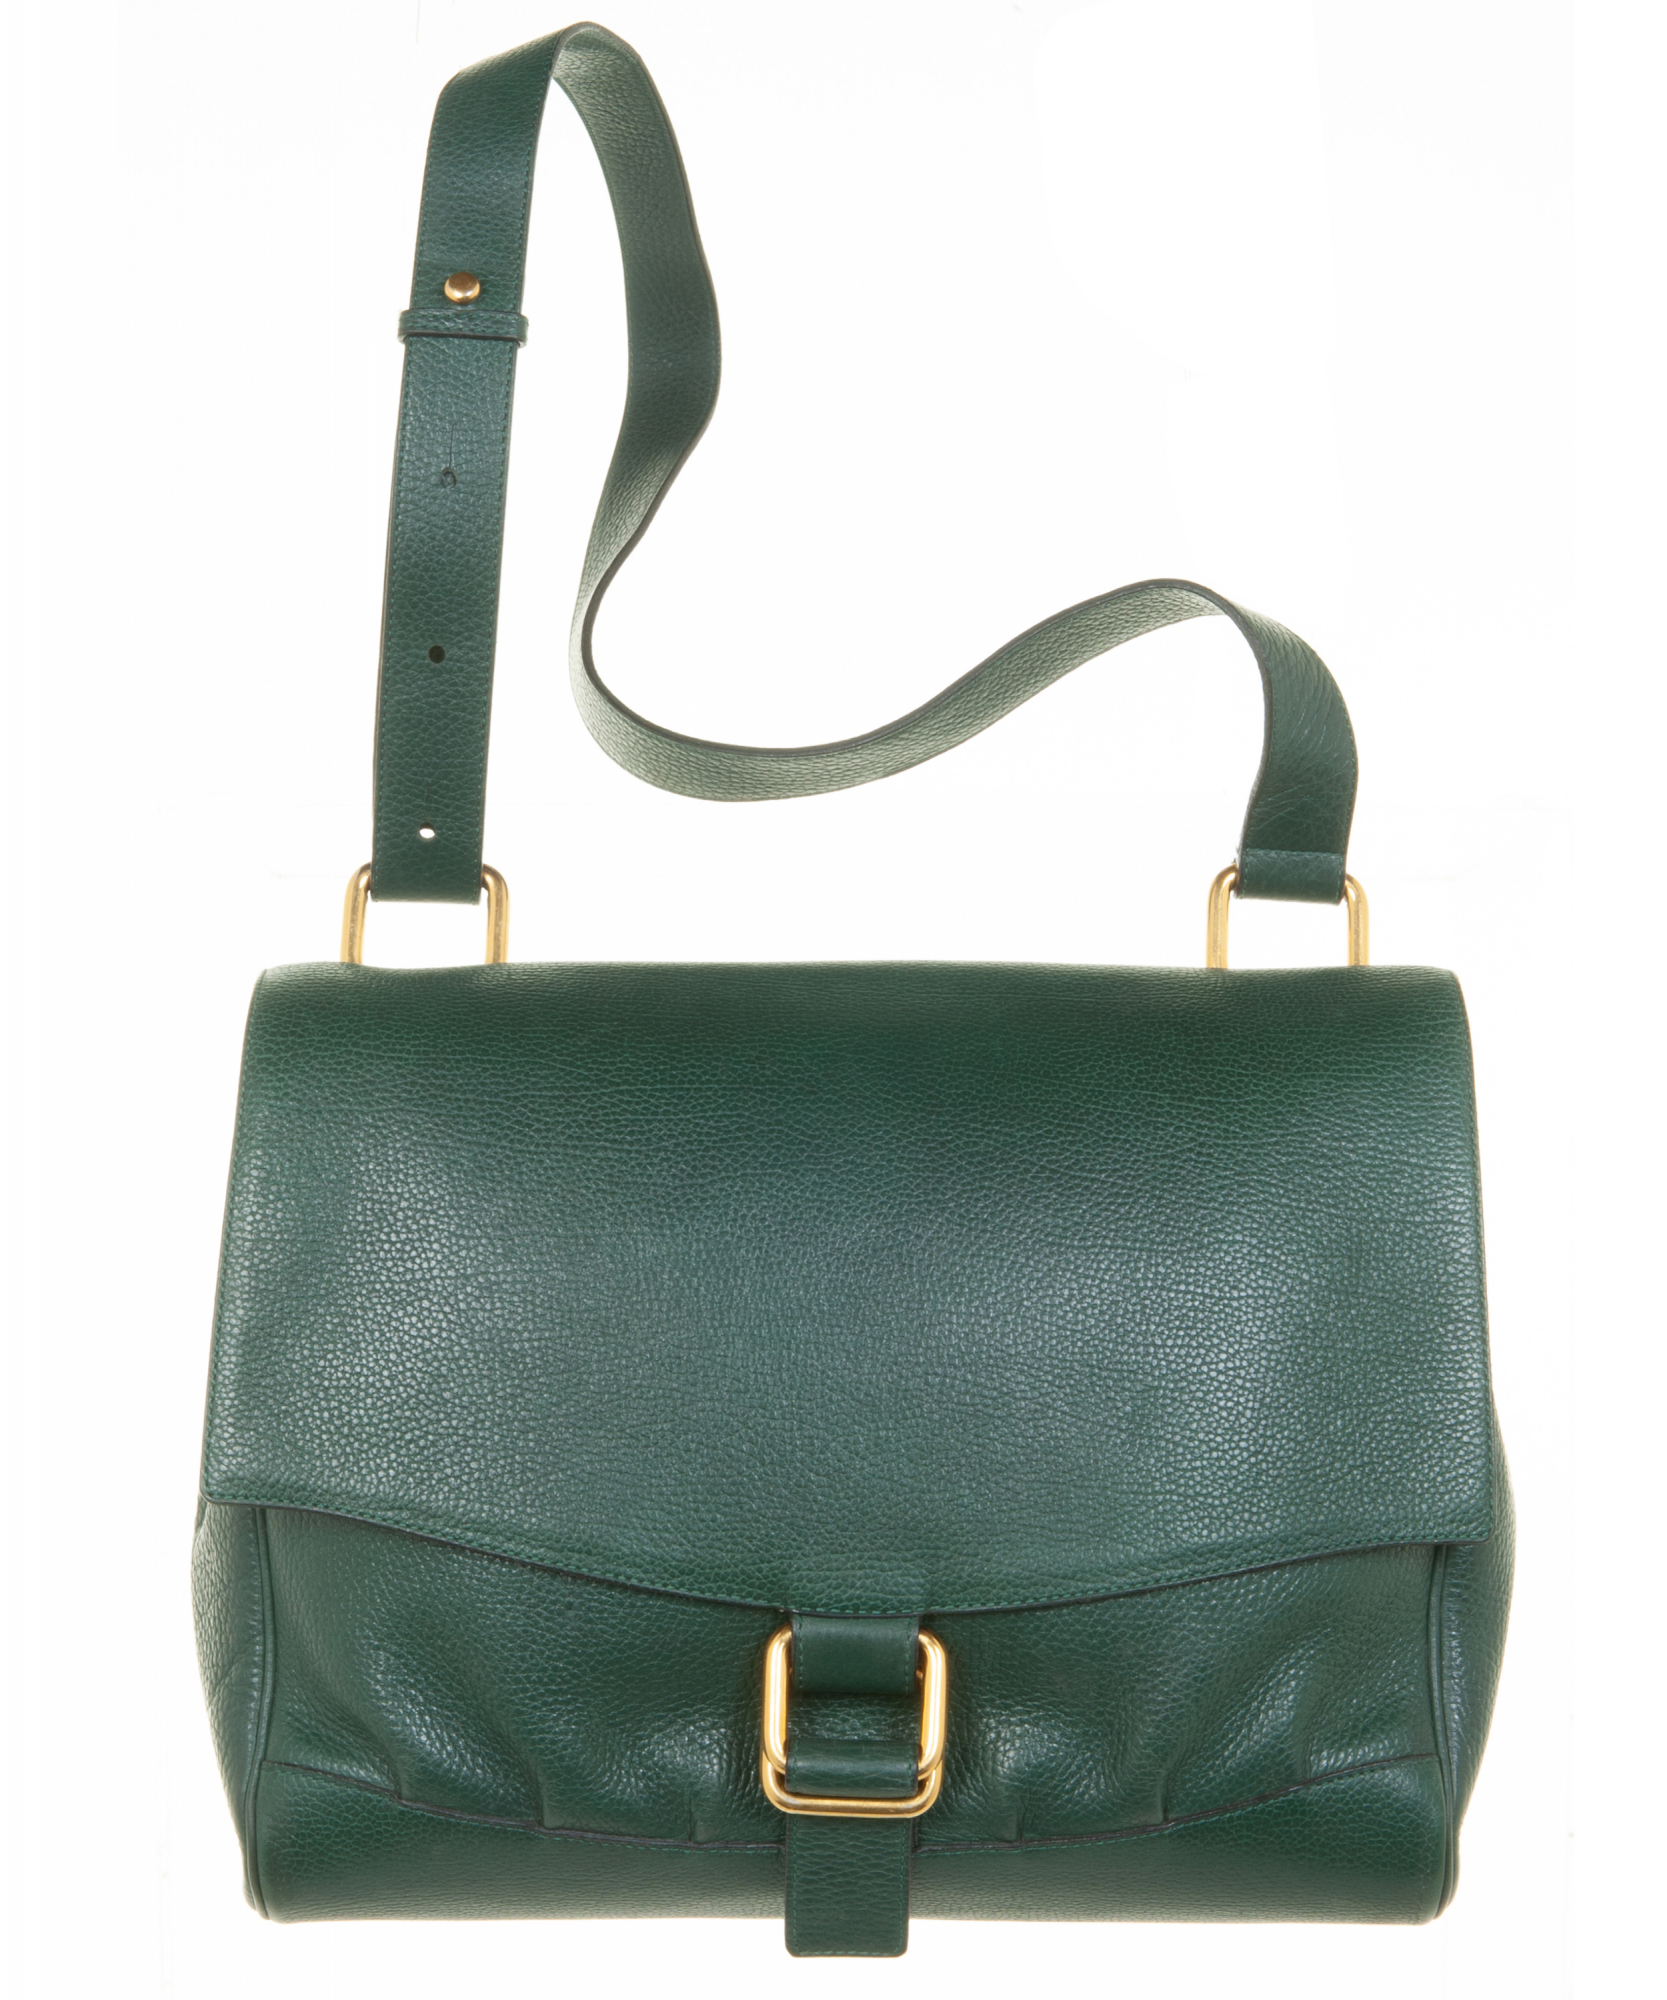 Delvaux Tempête MM - Green Handle Bags, Handbags - DVX21920